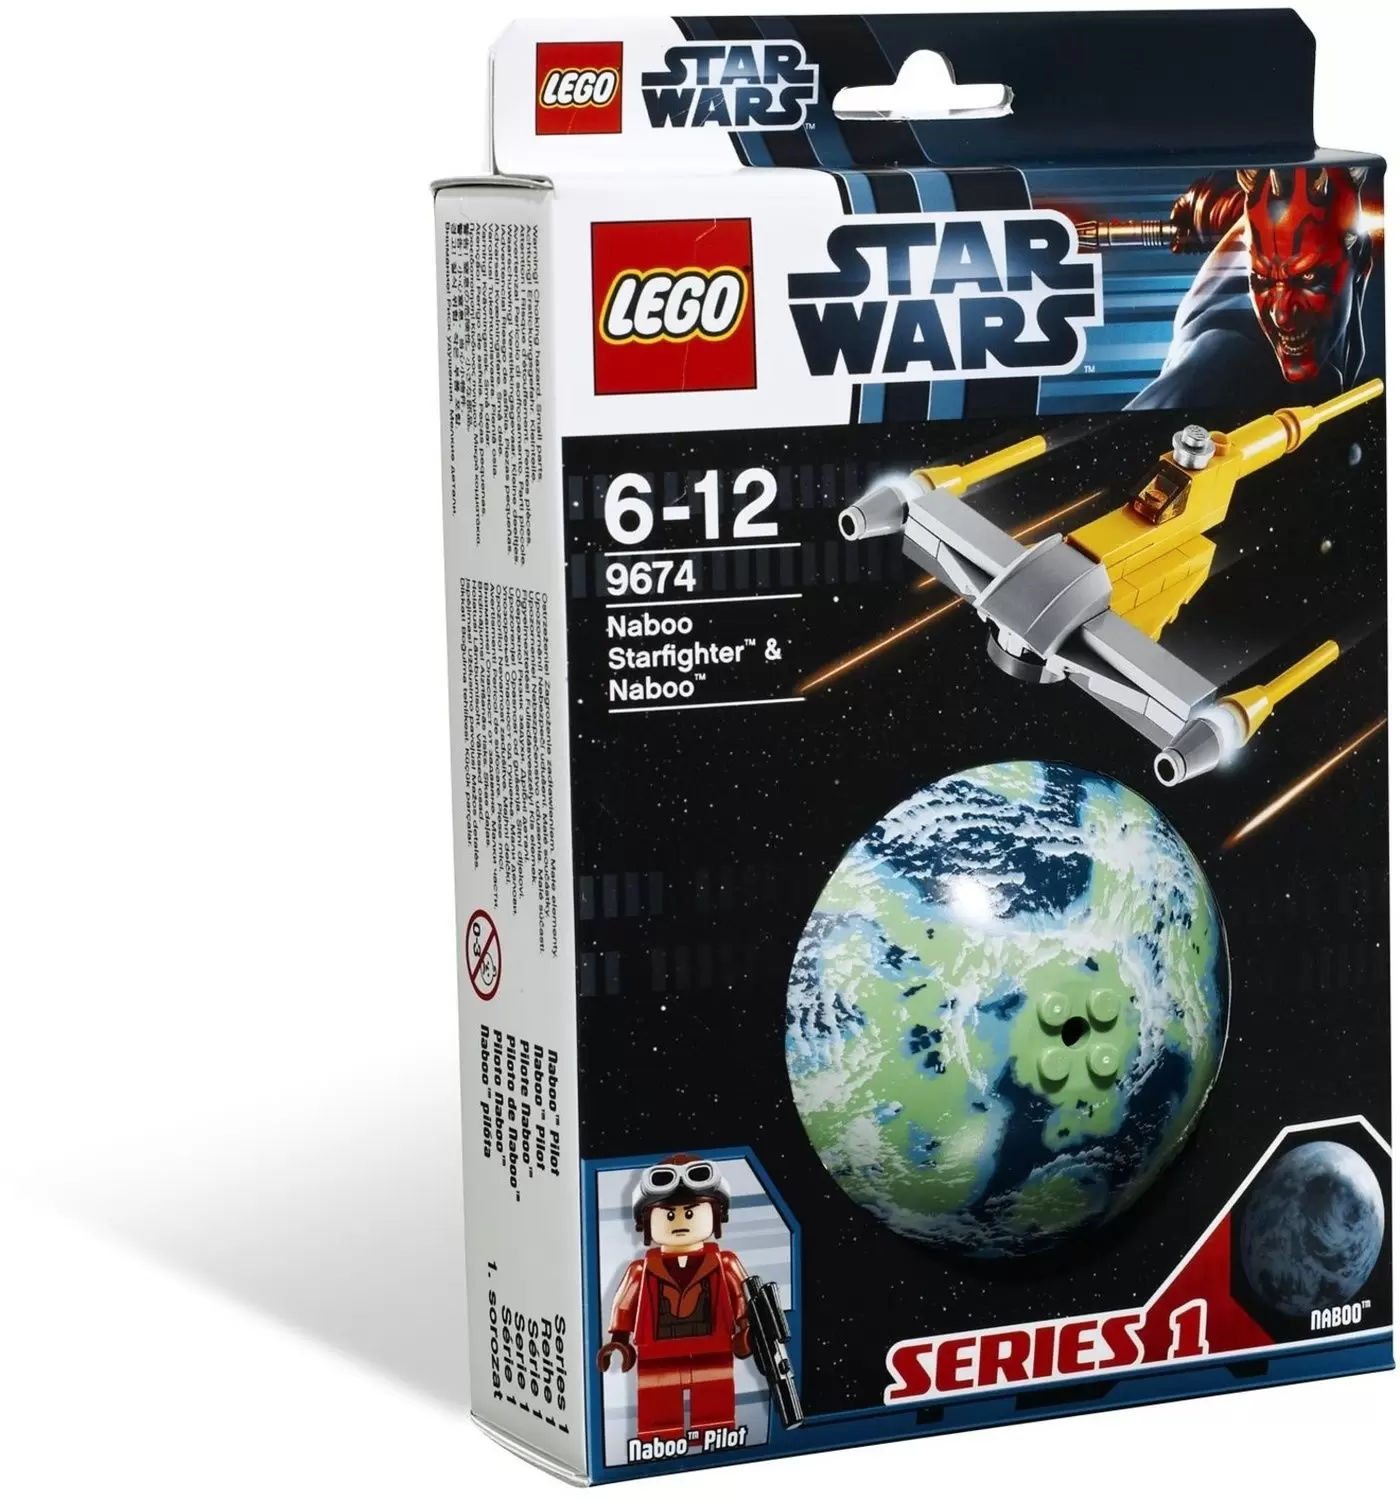 LEGO Star Wars - Naboo Starfighter & Naboo